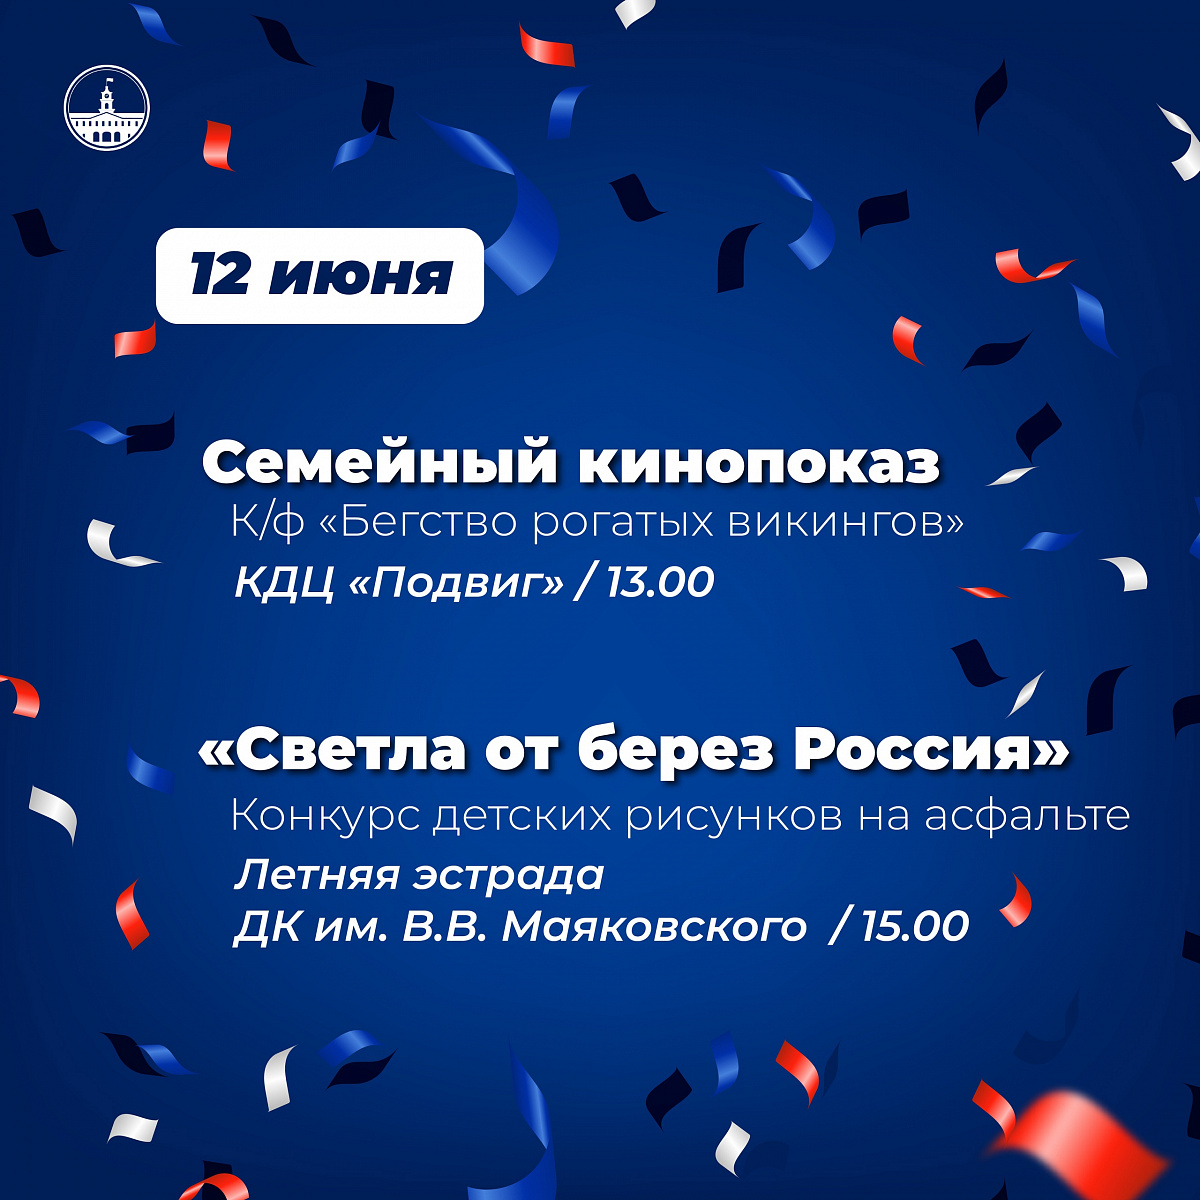 Приглашаем всех жителей и гостей Колпинского района присоединиться к празднованию Дня России